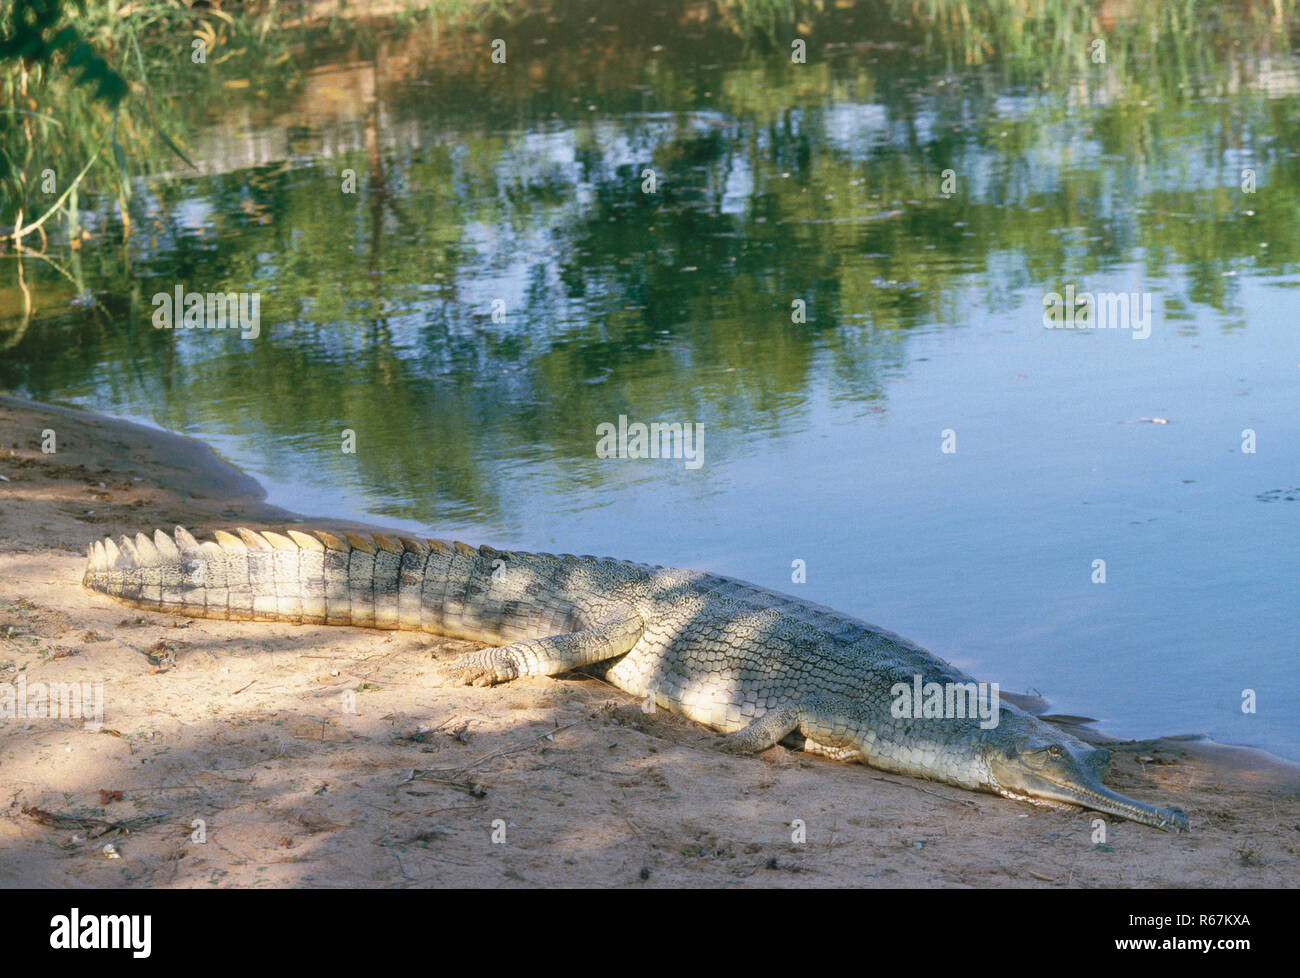 Los Reptiles, cocodrilos, caimanes gavial (gavialis gangeticus), dighpur islas Andaman y Nicobar, India Foto de stock